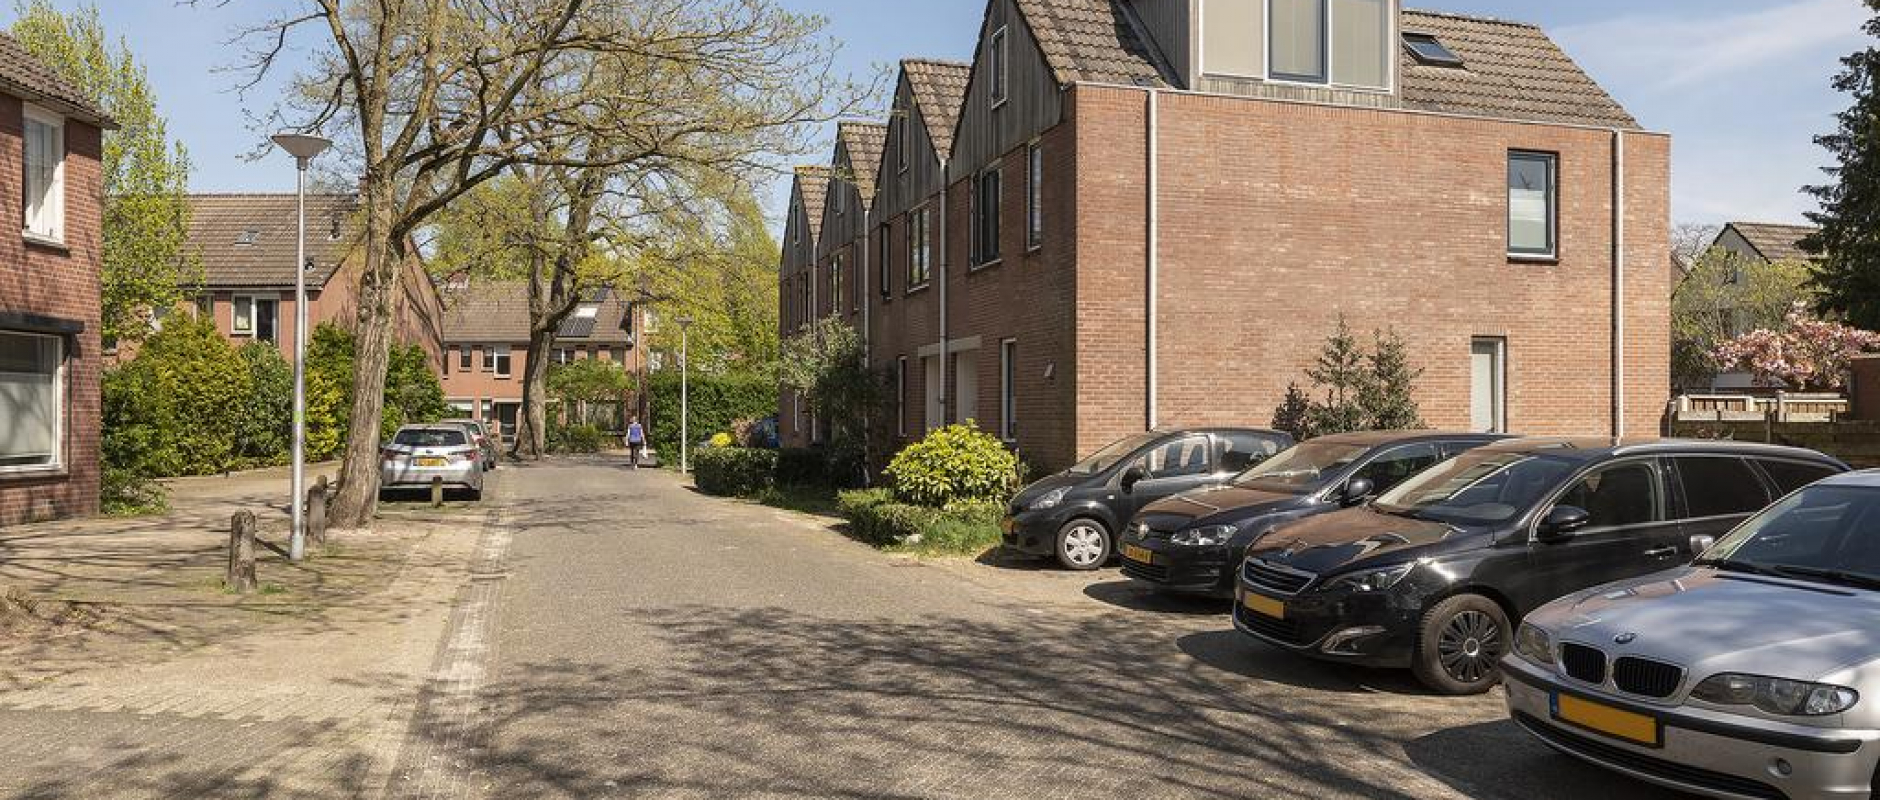 Woning te koop aan de Hoekstraat 2 te Zwolle